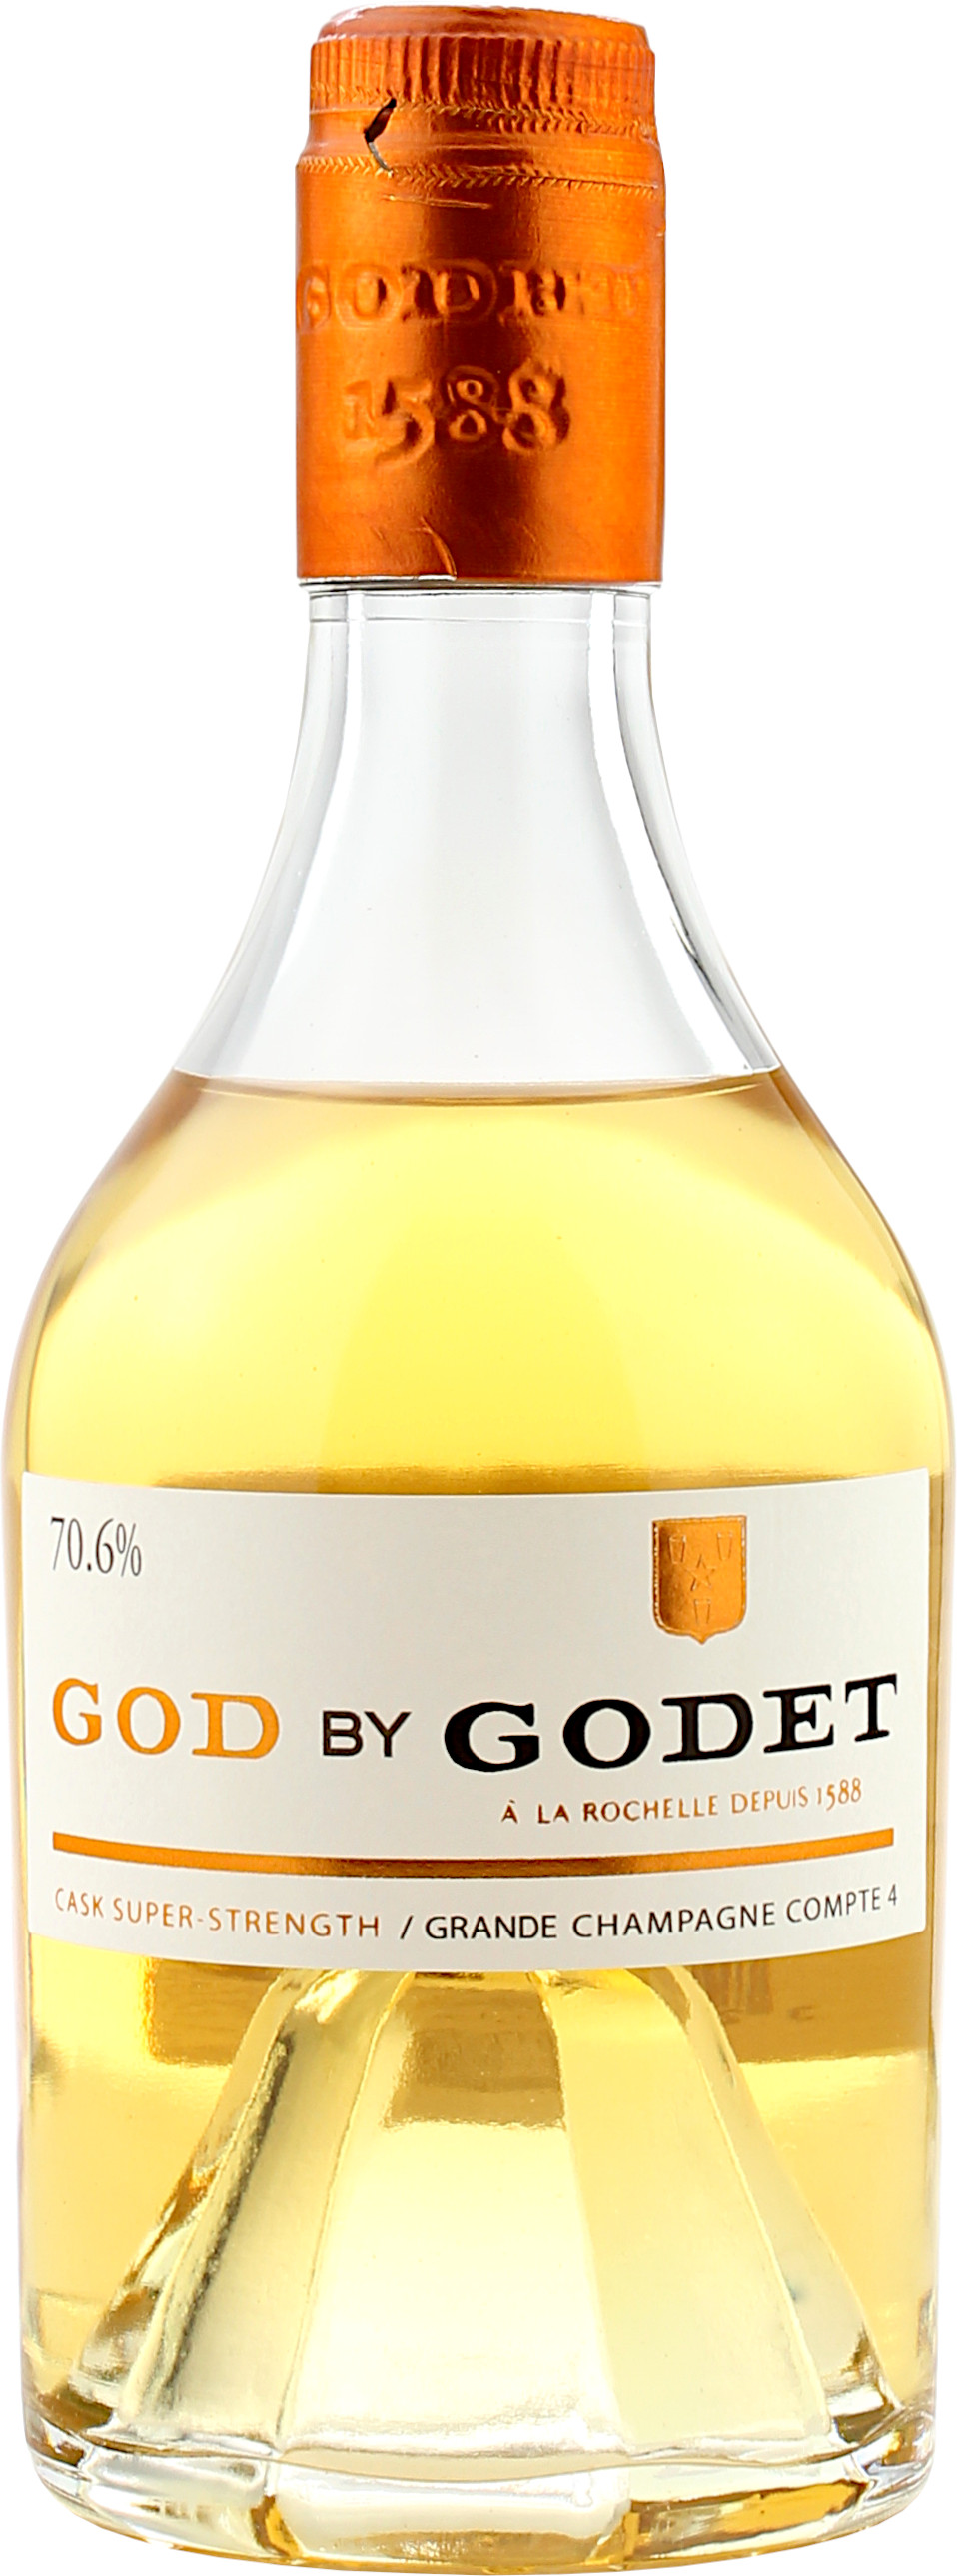 Godet Cognac God by Godet Cask Super-Strength 70.6% 0,35l